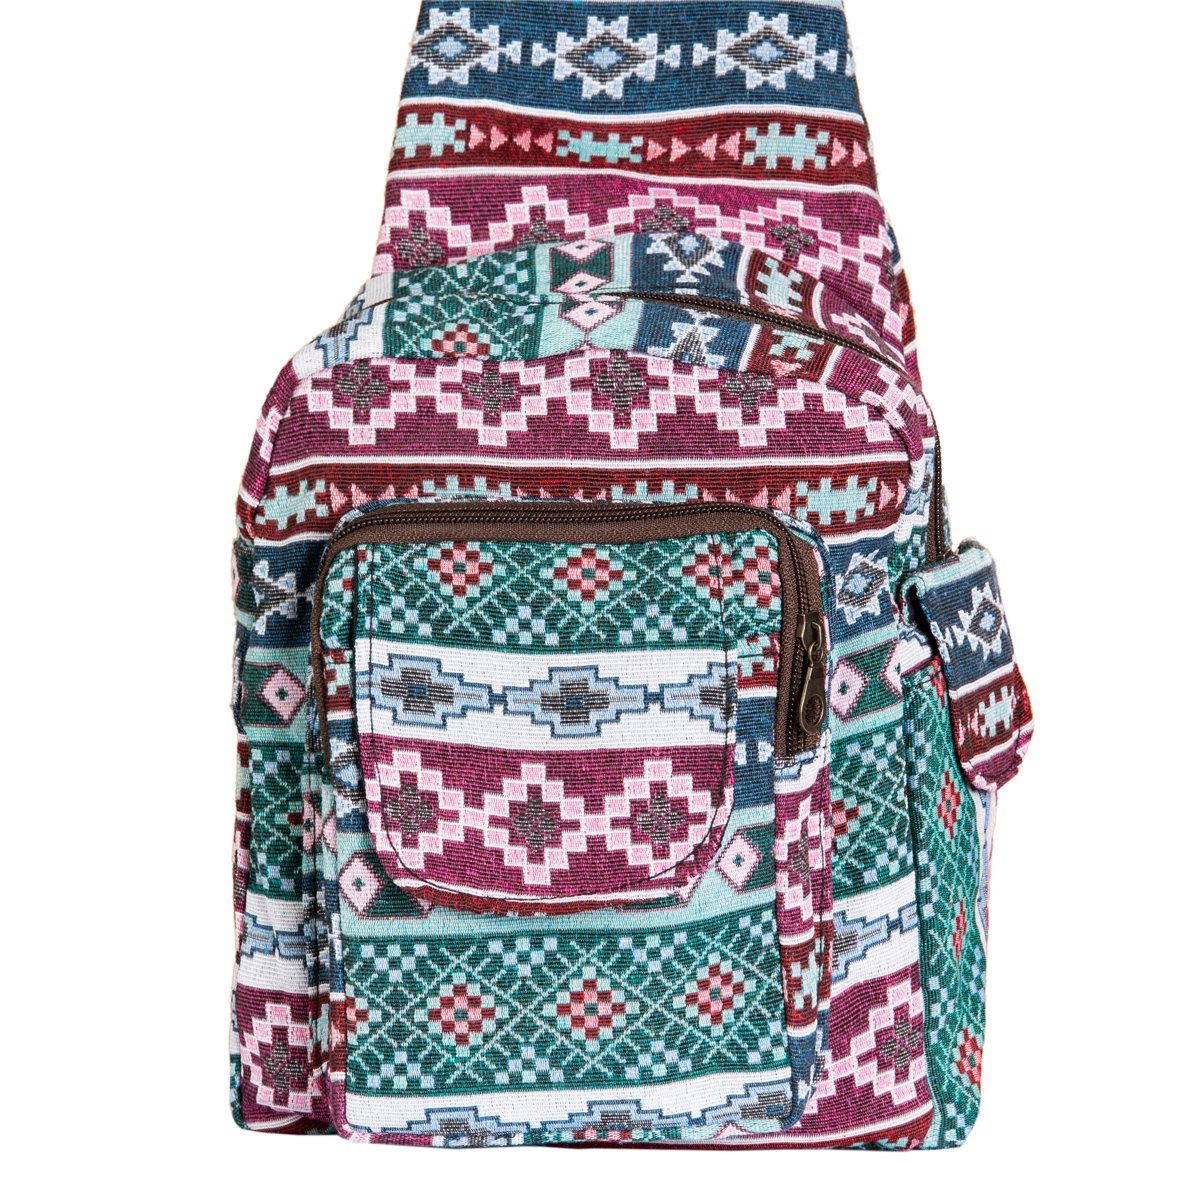 wie aus PANASIAM einer, Rucksack WOV11 ein Webdesign Baumwolle kleiner kleine Schultertasche Handtasche auch fester auf Freizeittasche Schulter tragbar Umhängetasche